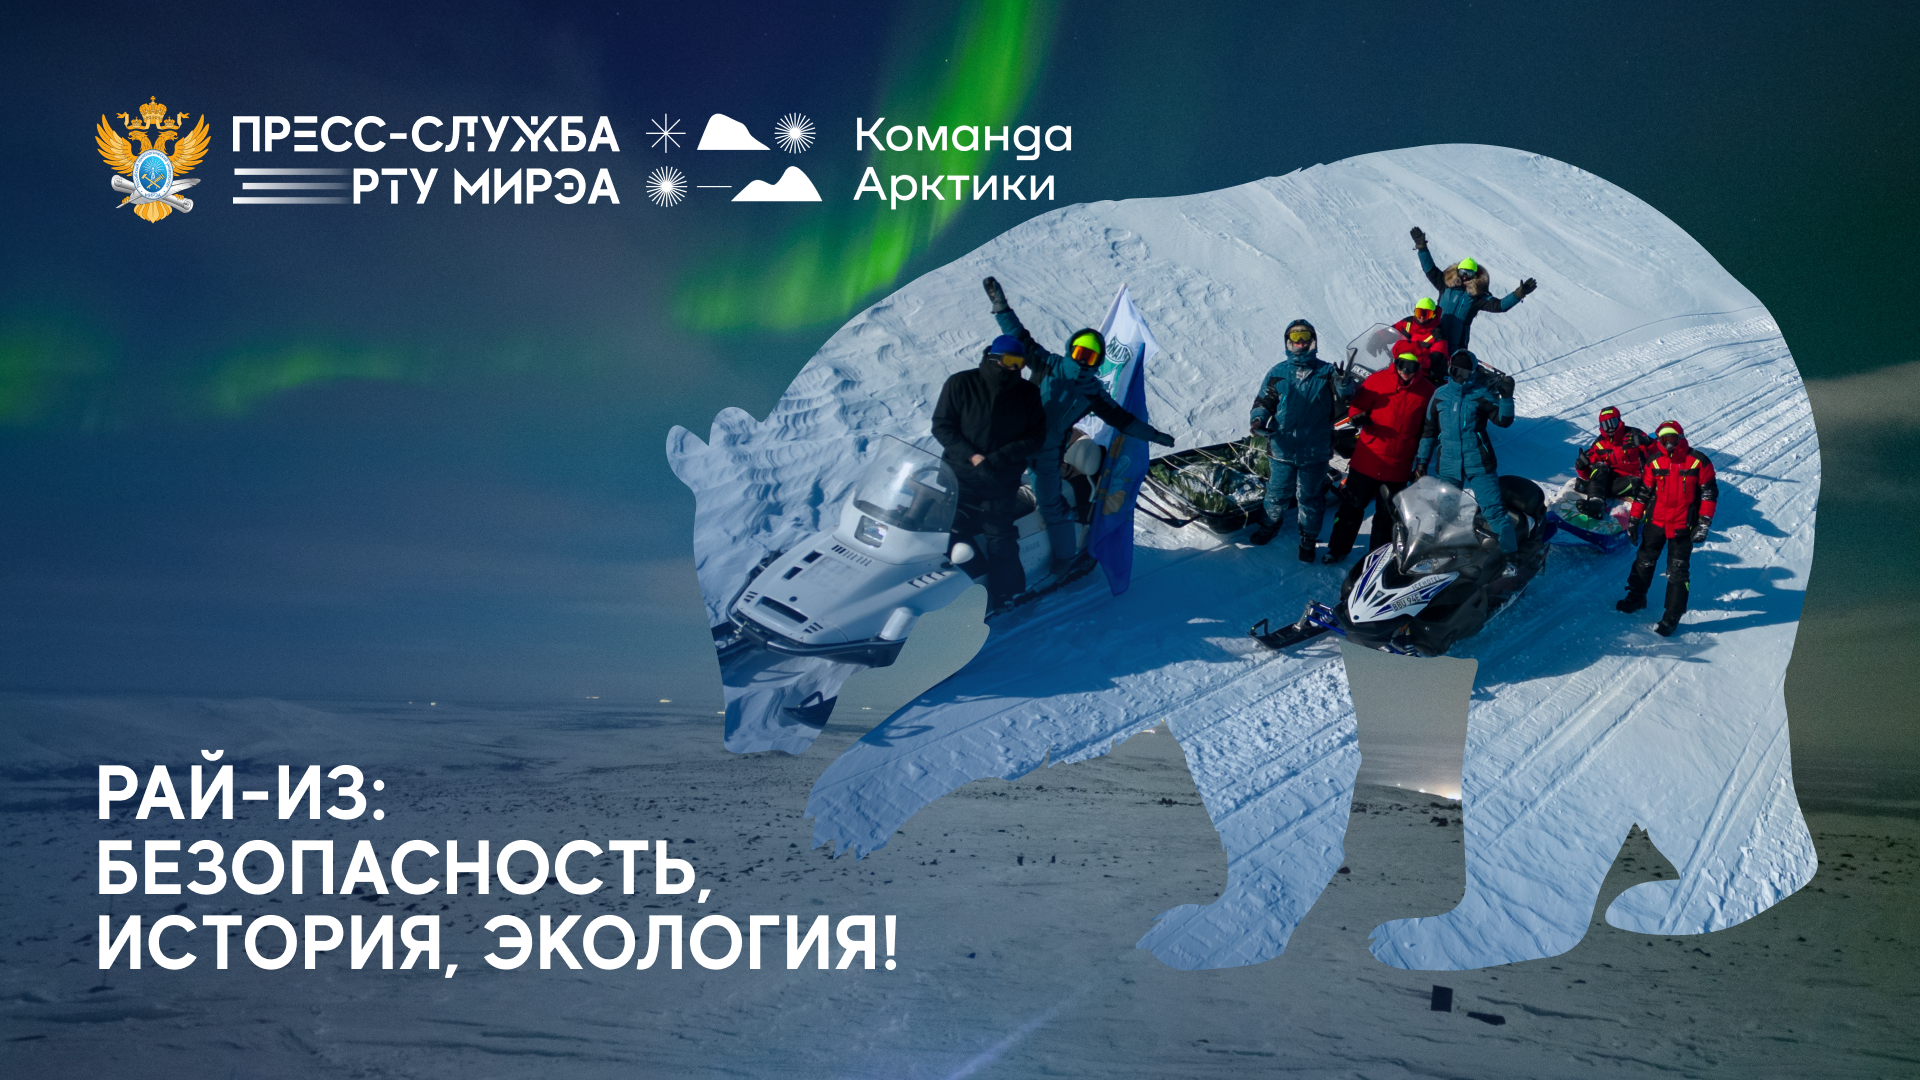 Состоялась первая арктическая экспедиция «Команды Арктики»